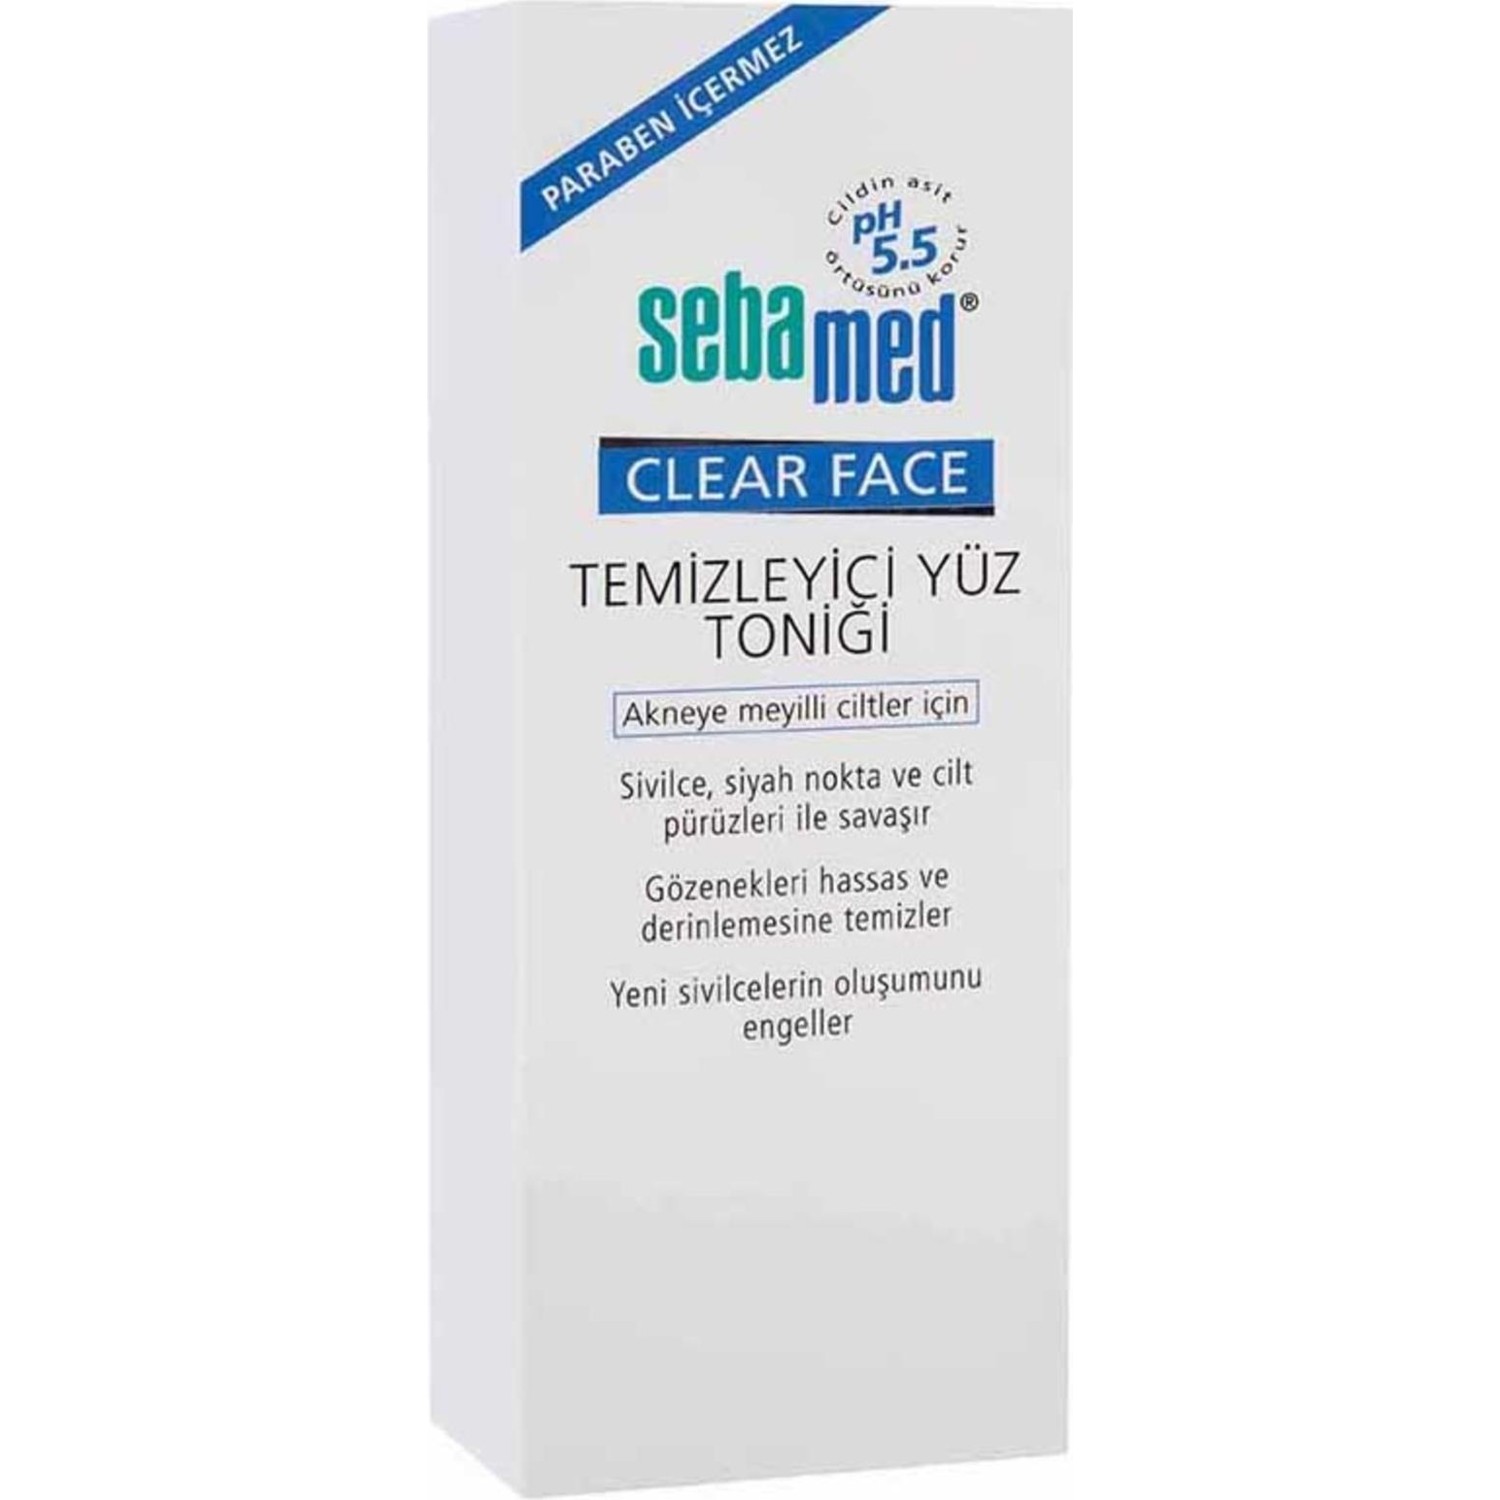 Очищающий тоник для лица Sebamed Clear Face, 150 мл